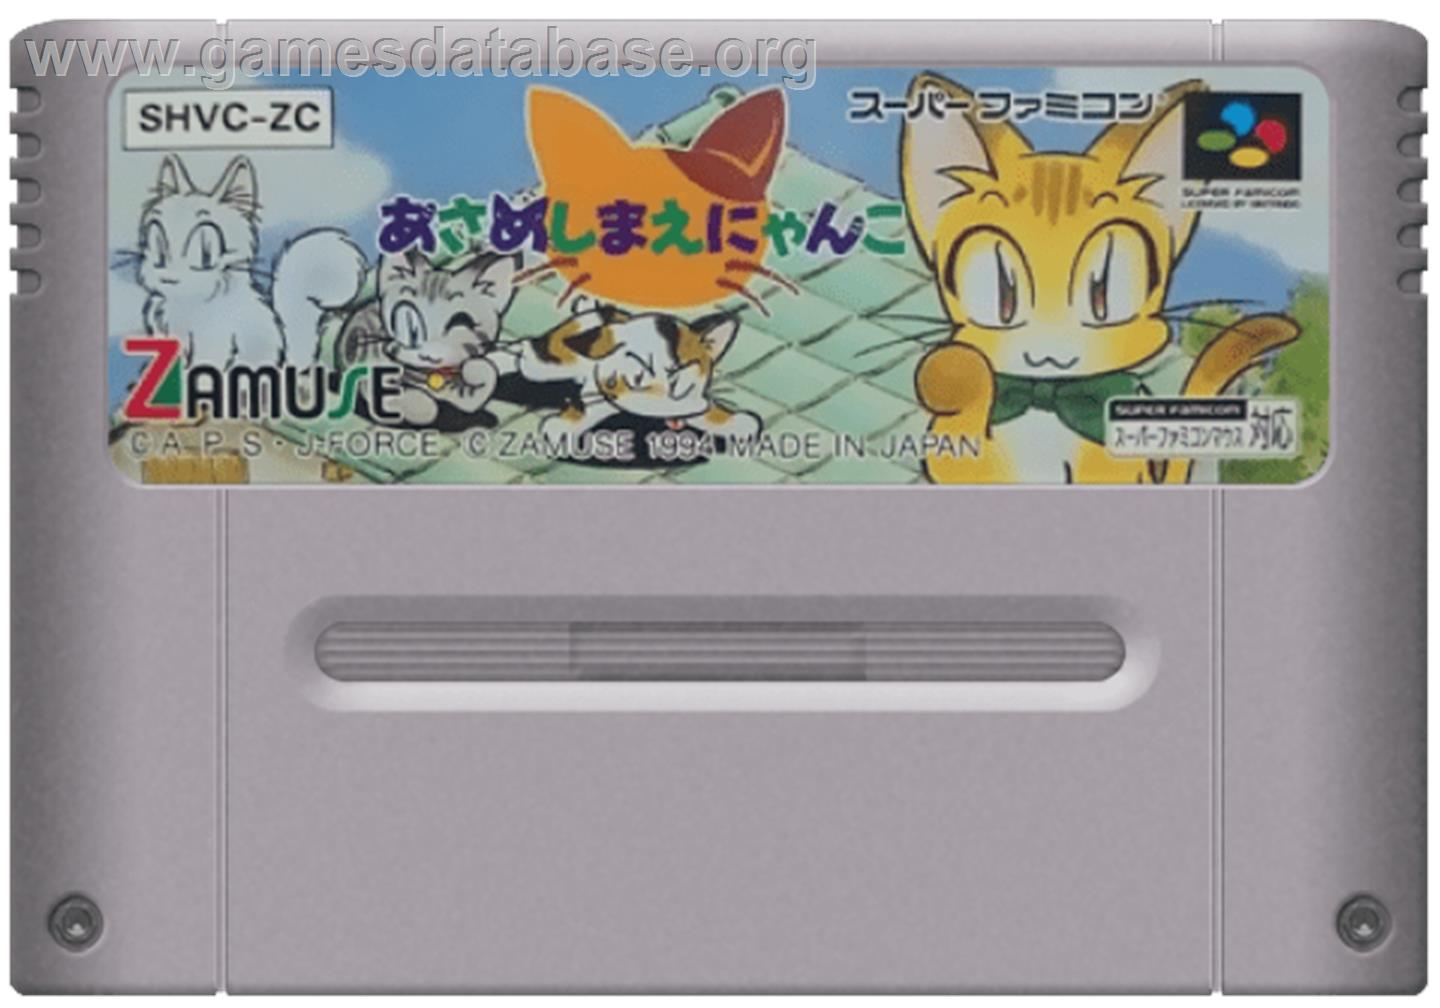 Asameshimae Nyanko - Nintendo SNES - Artwork - Cartridge